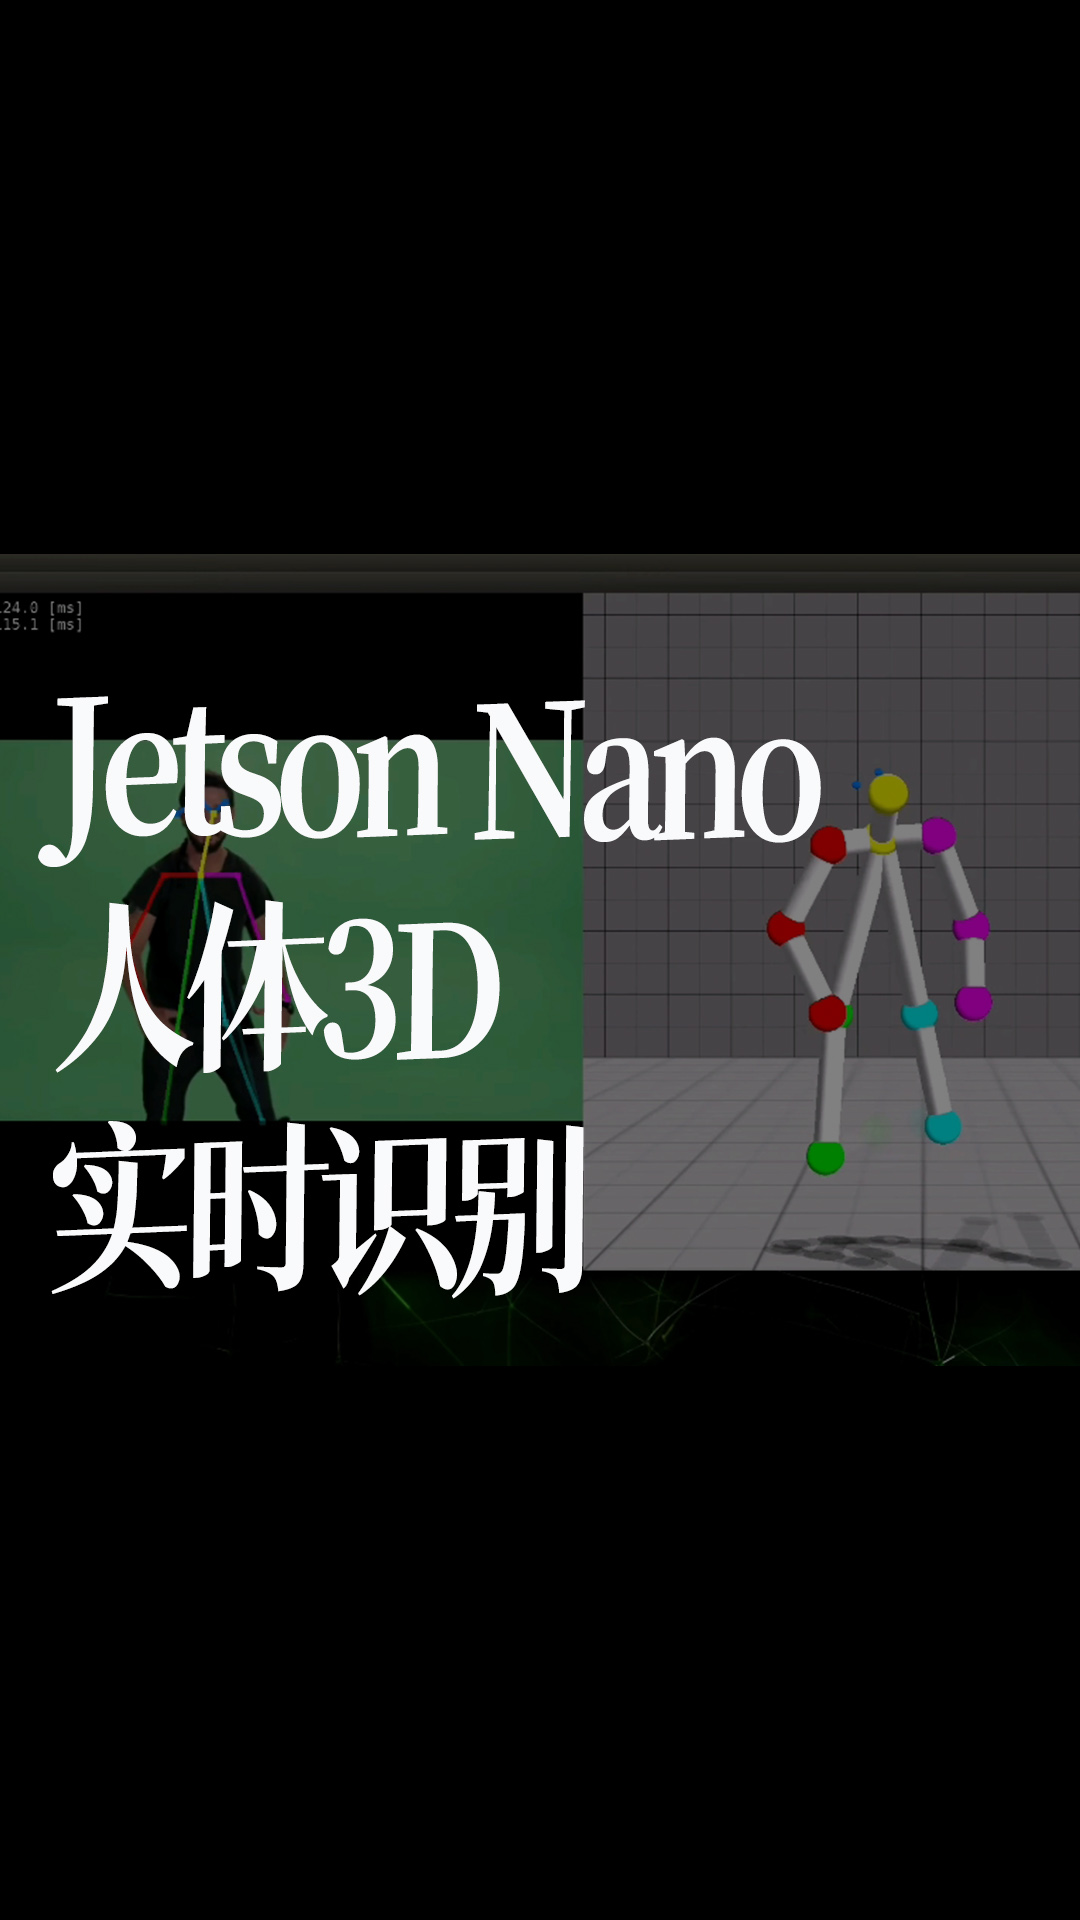 Jetson Nano人體3D實時識別